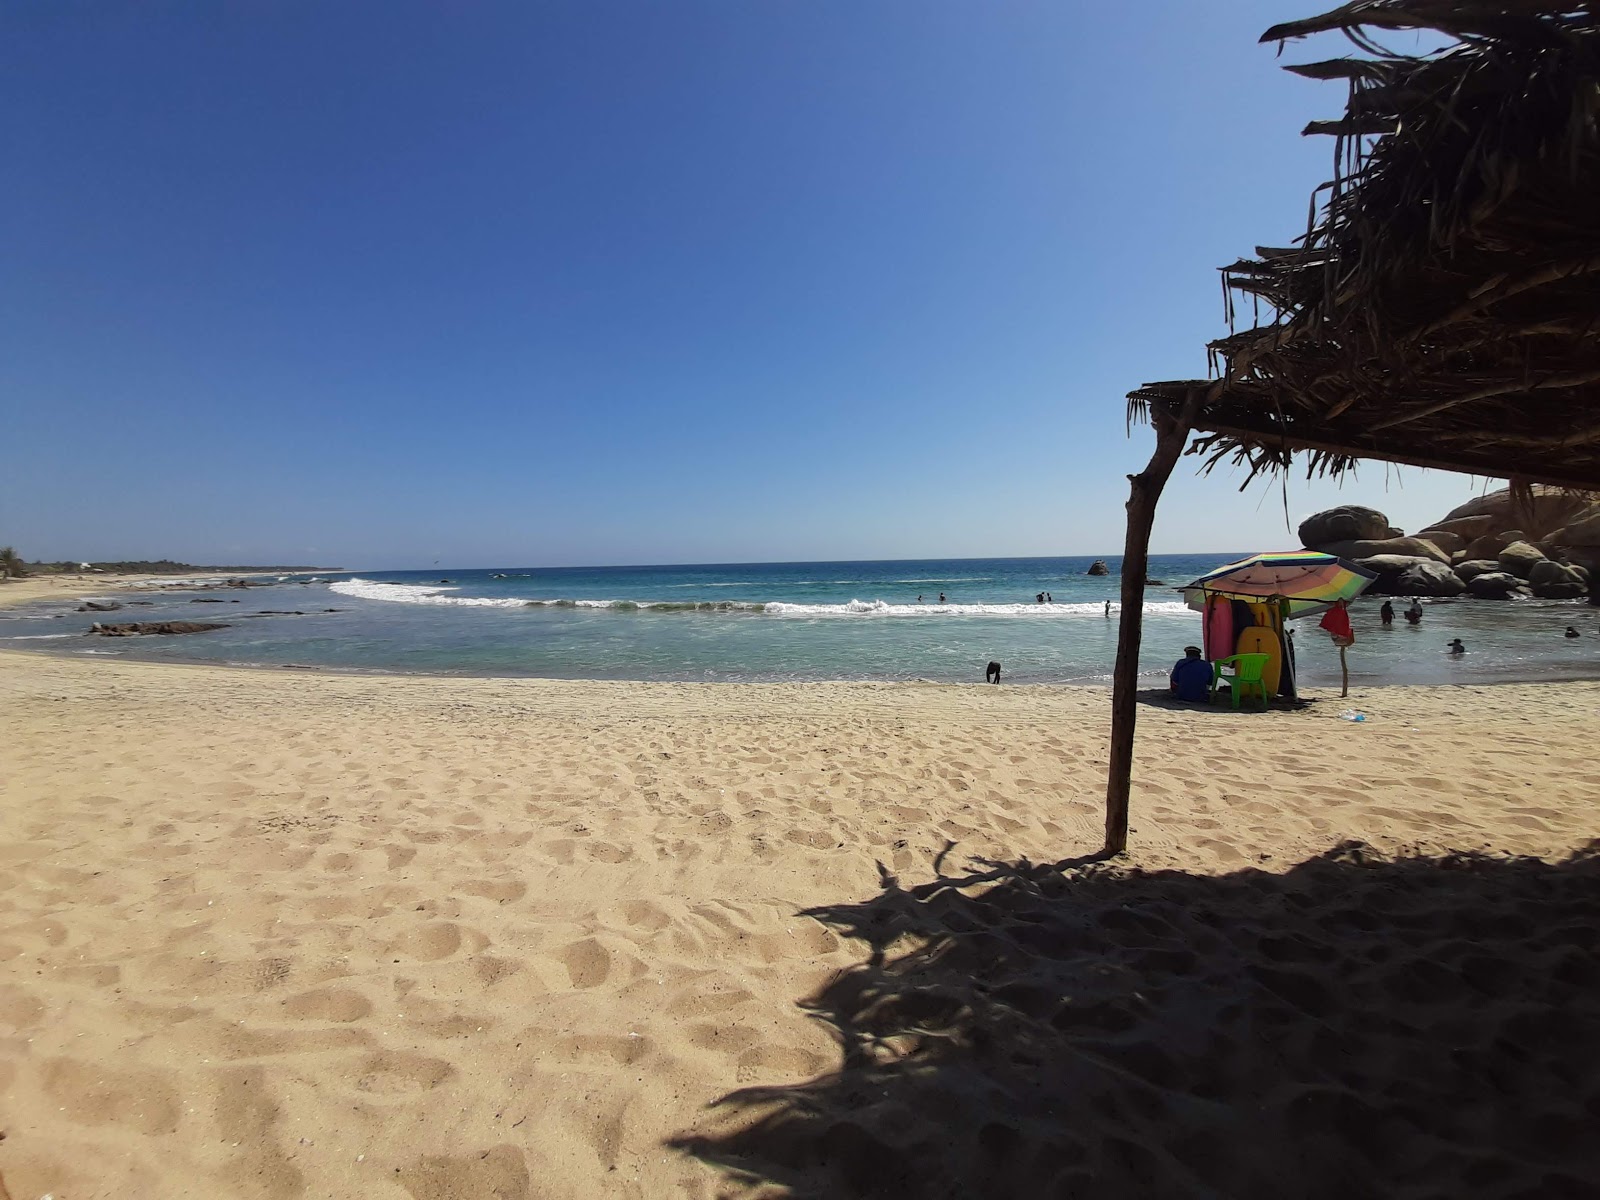 Fotografie cu Playa Las Gaviotas cu o suprafață de nisip strălucitor